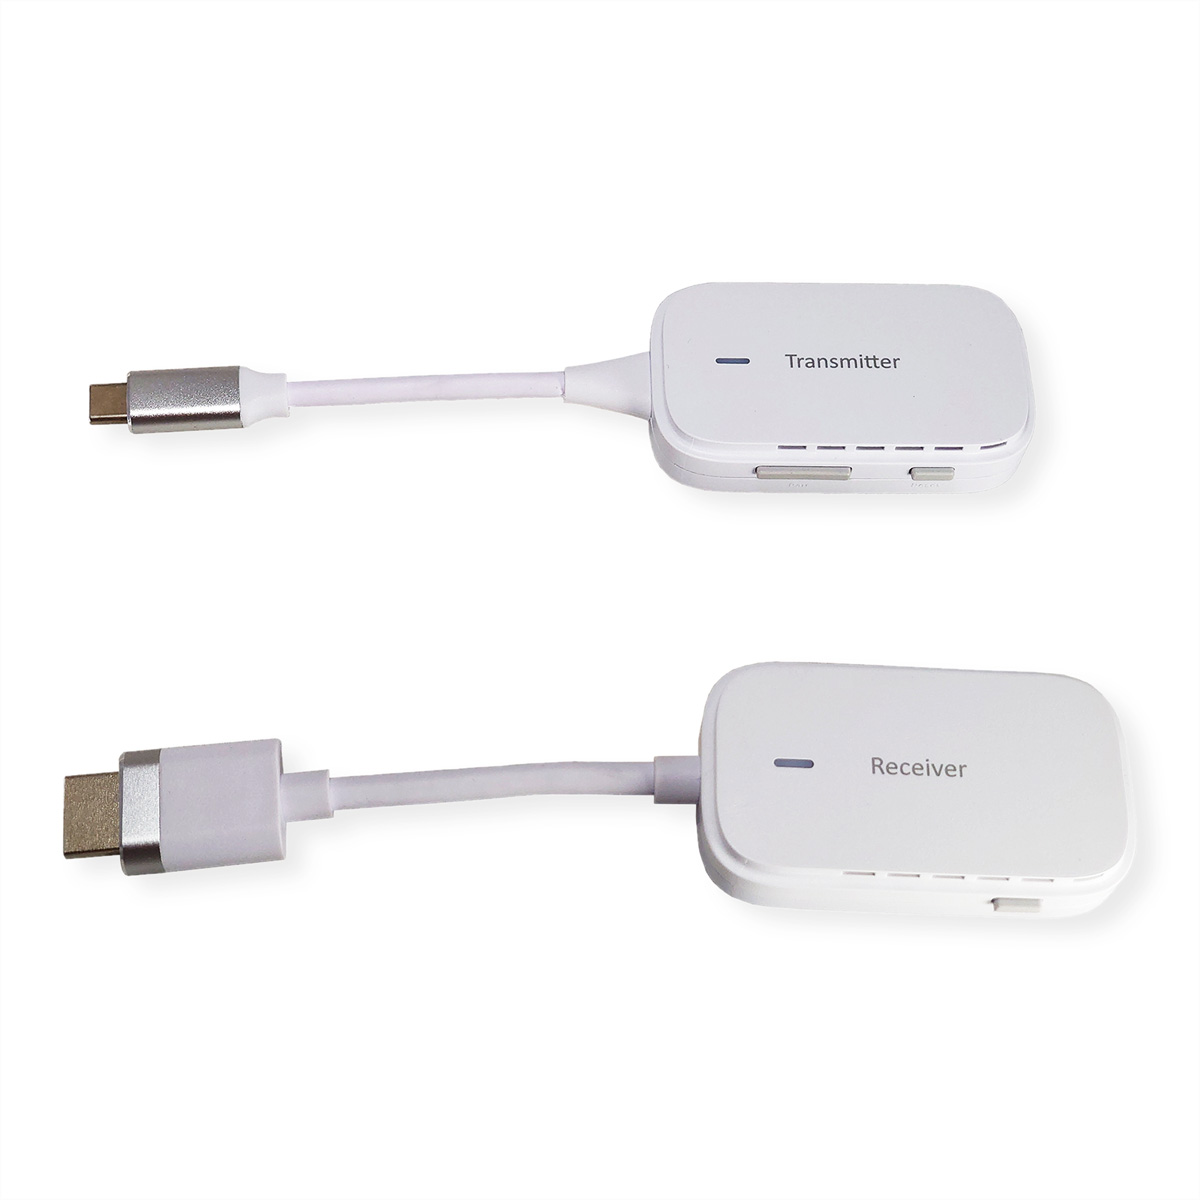 VALUE Wireless USB/HDMI A/V System, C - HDMI, 20 m